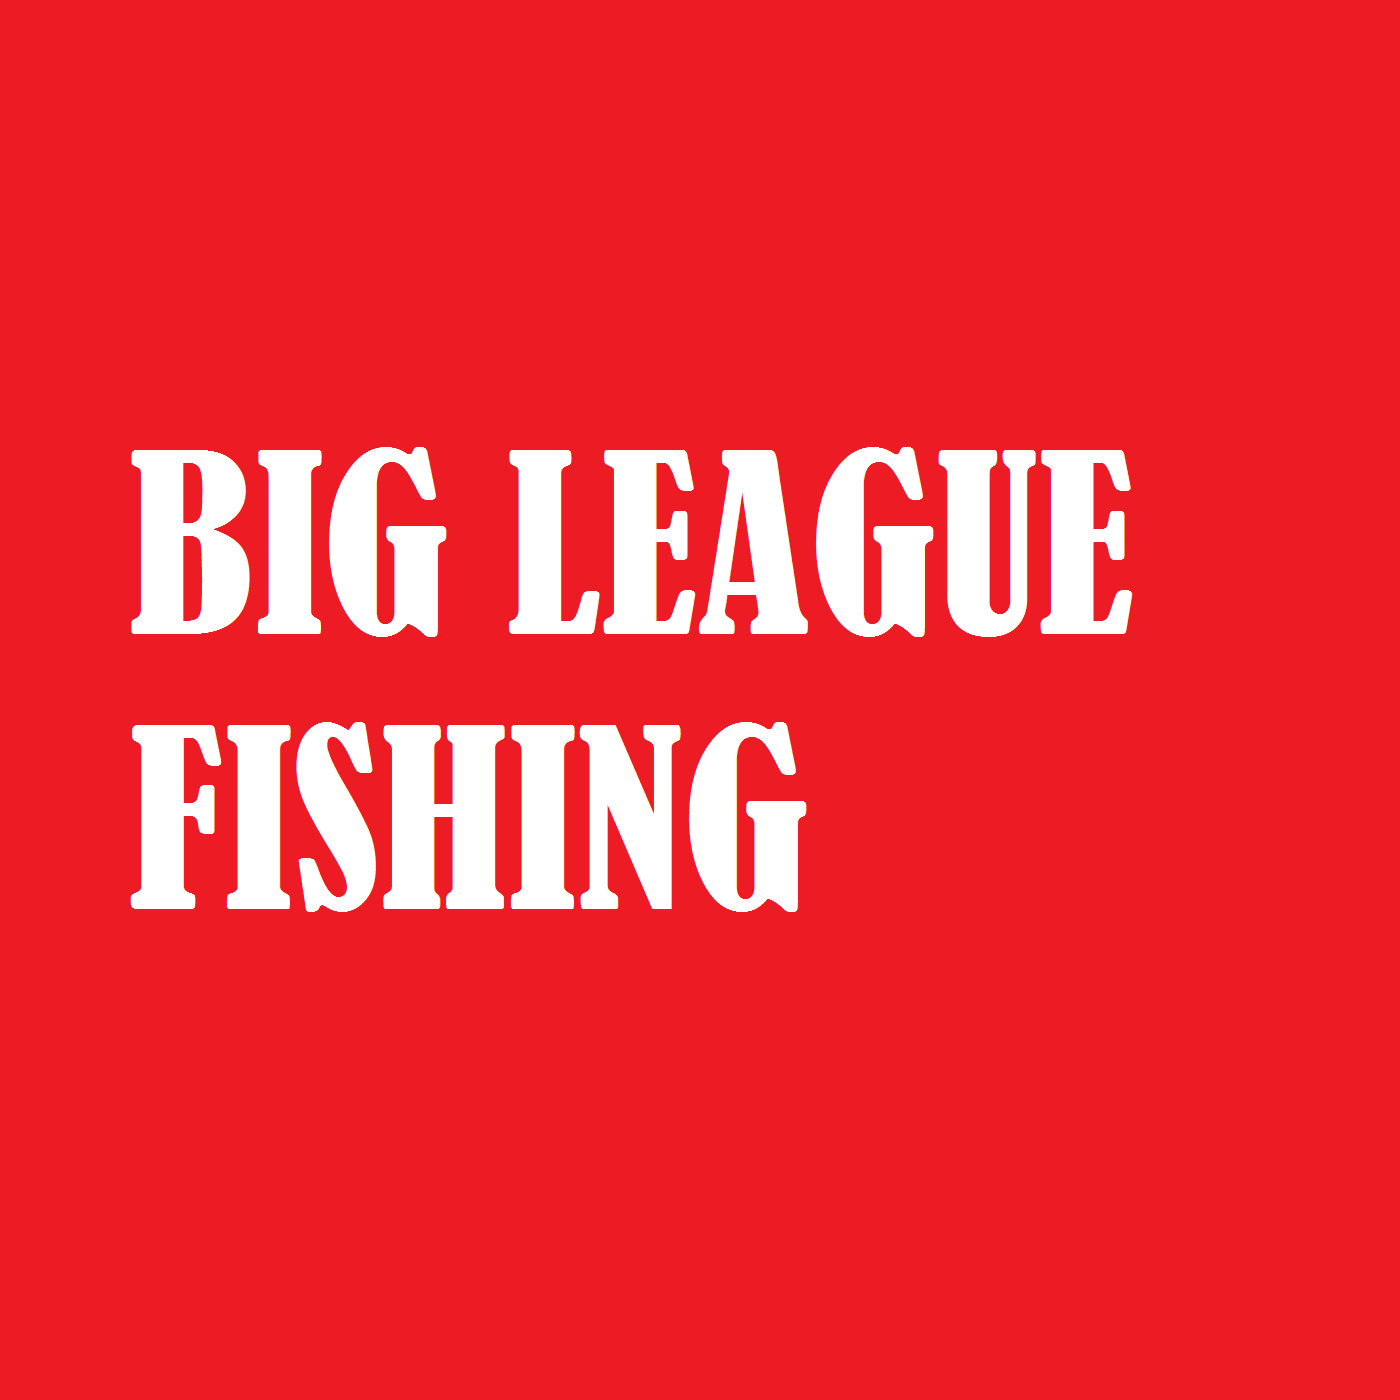 Big League Fishing